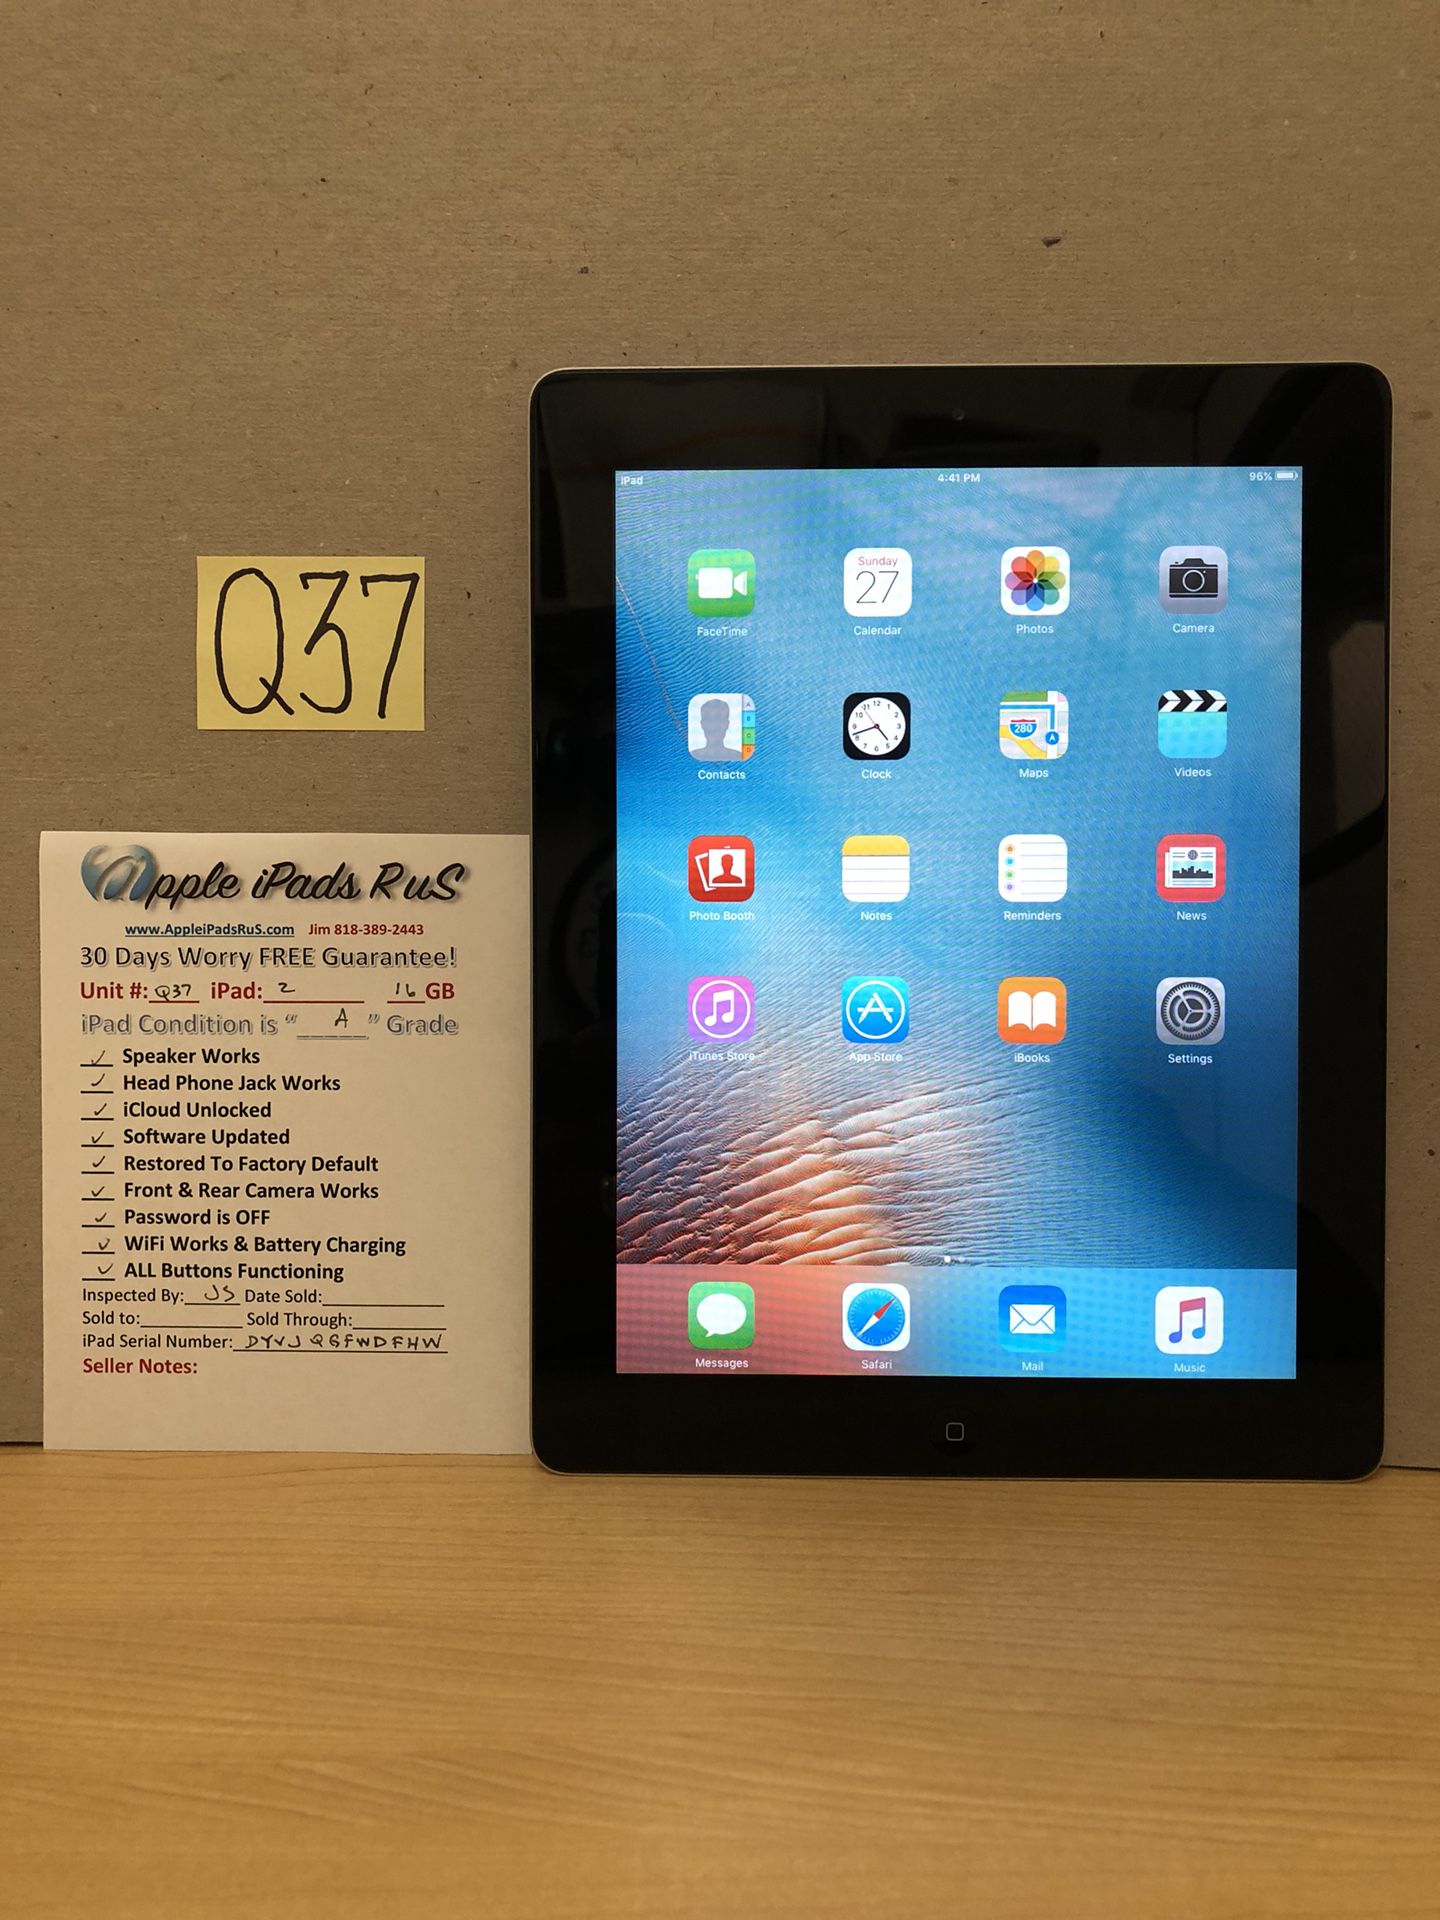 Q37 - iPad 2 16GB